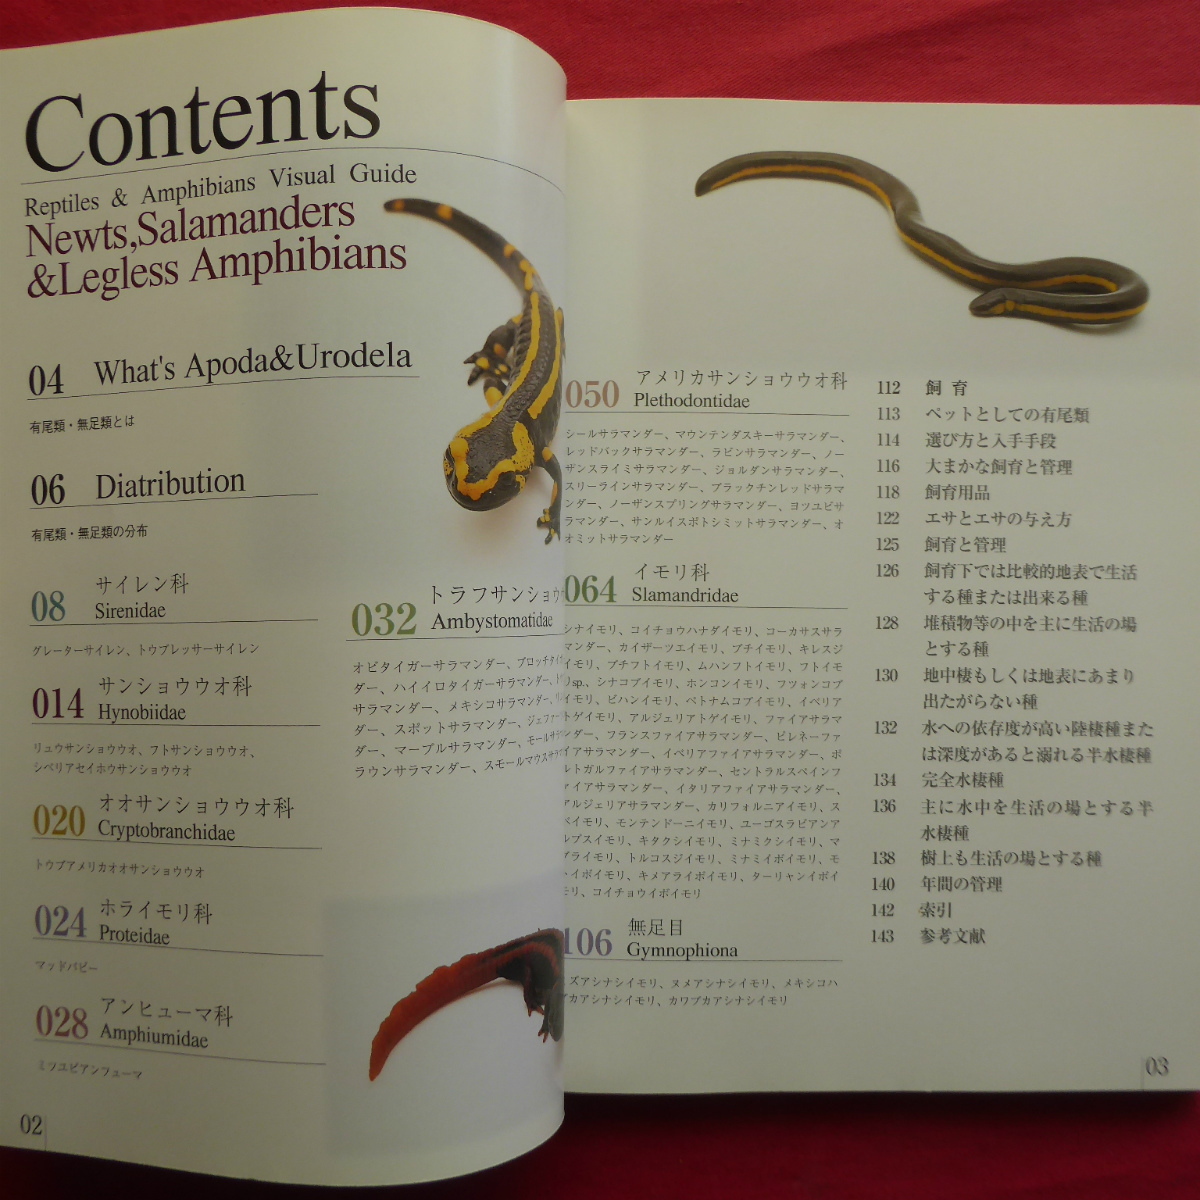 θ5/ Yamazaki profit . work [. insect * amphibia visual guide newt * reference uo. company - have tail kind * less tail kind /. writing . new light company *2005 year ]